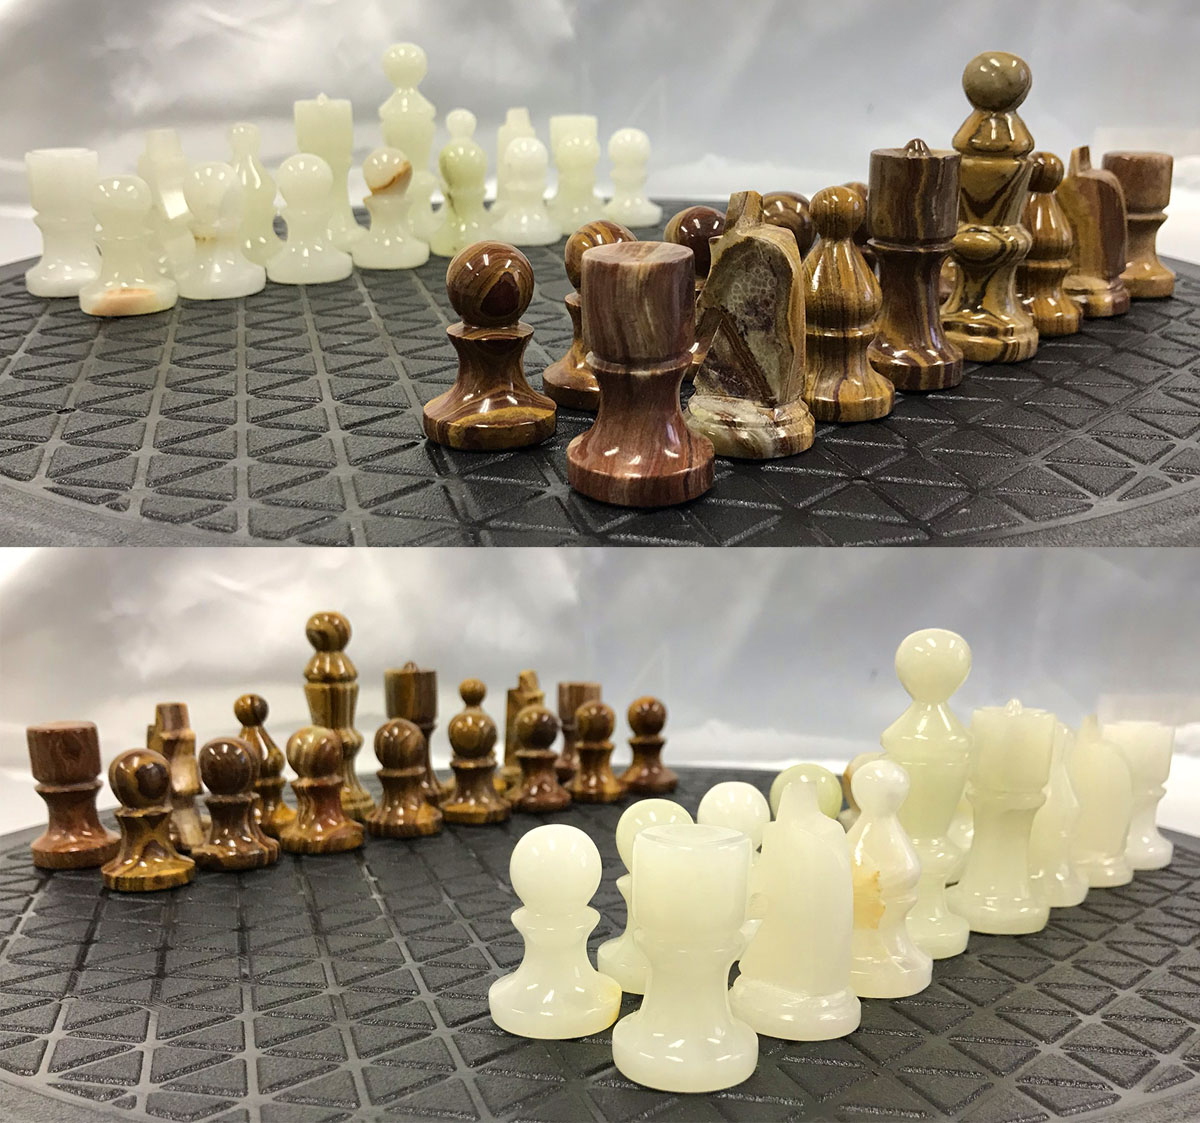 チェ～ス！ チェスの駒いろいろ♪ – 株式会社アジアトレーディング